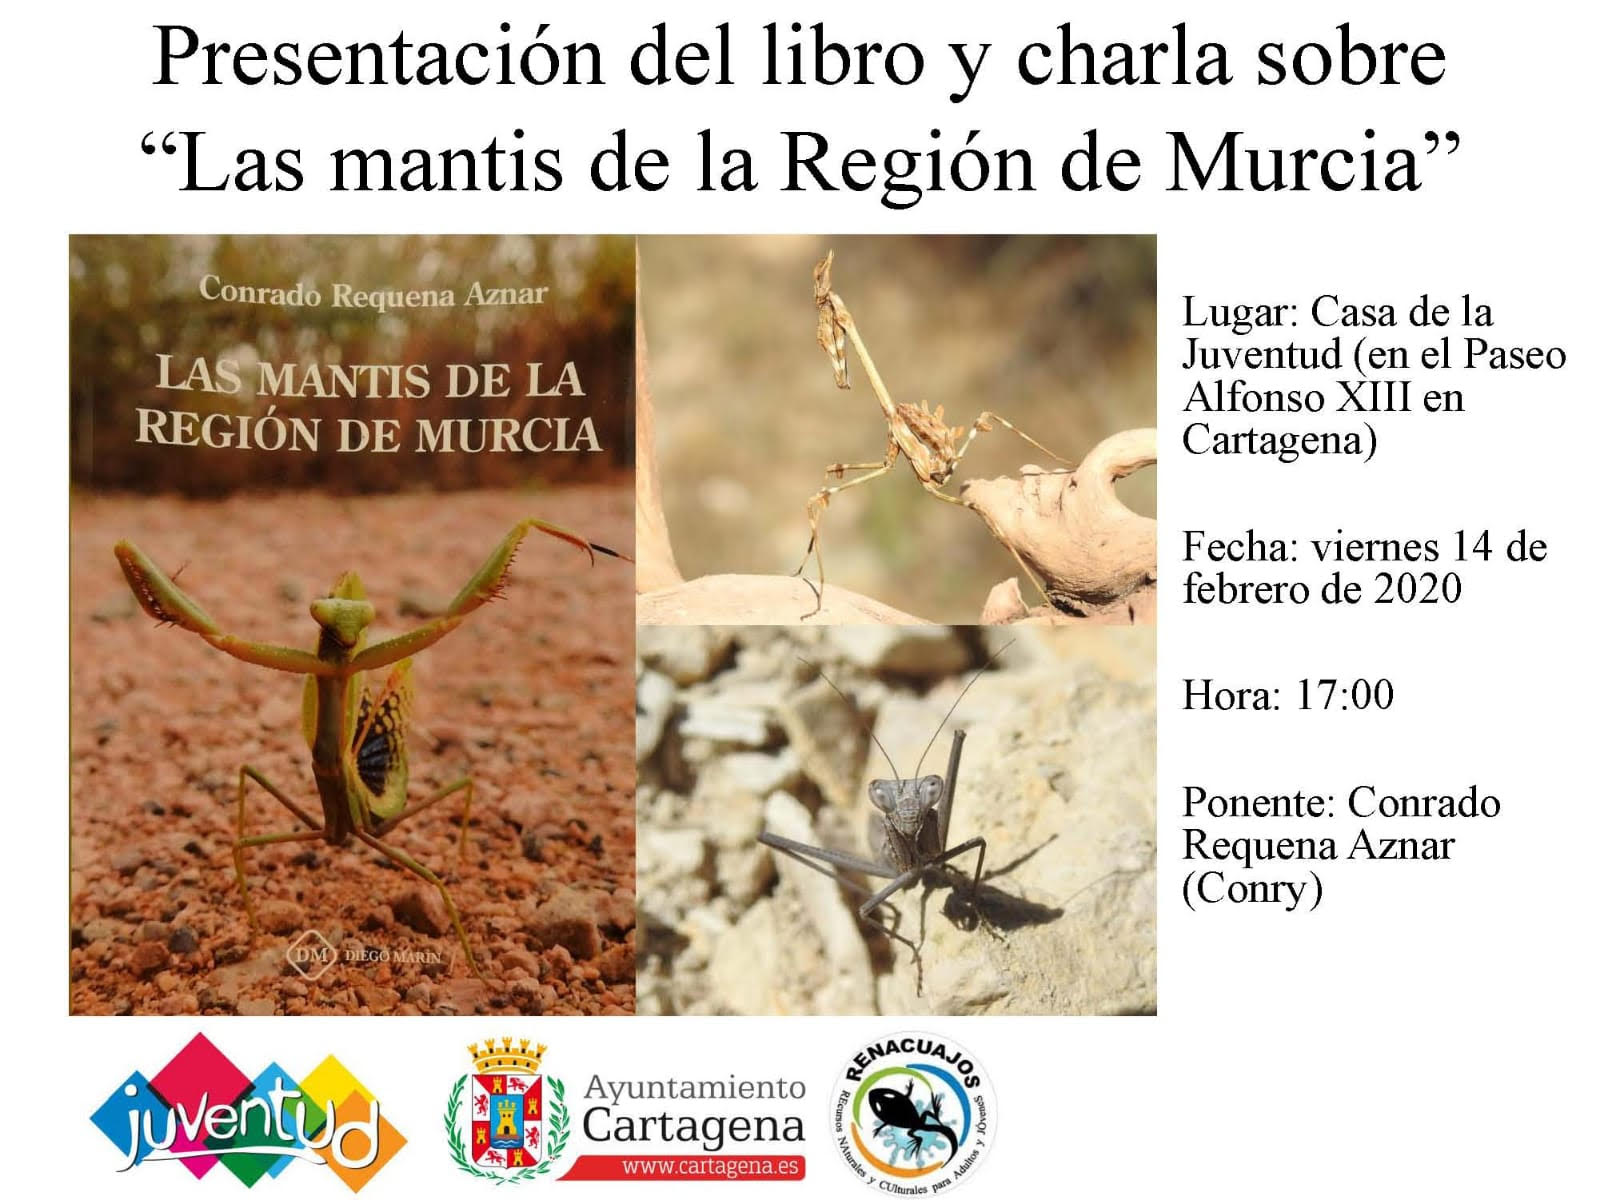 Presentación de un libro sobre mantis de la Región de Murcia, con el Ayto. de Cartagena